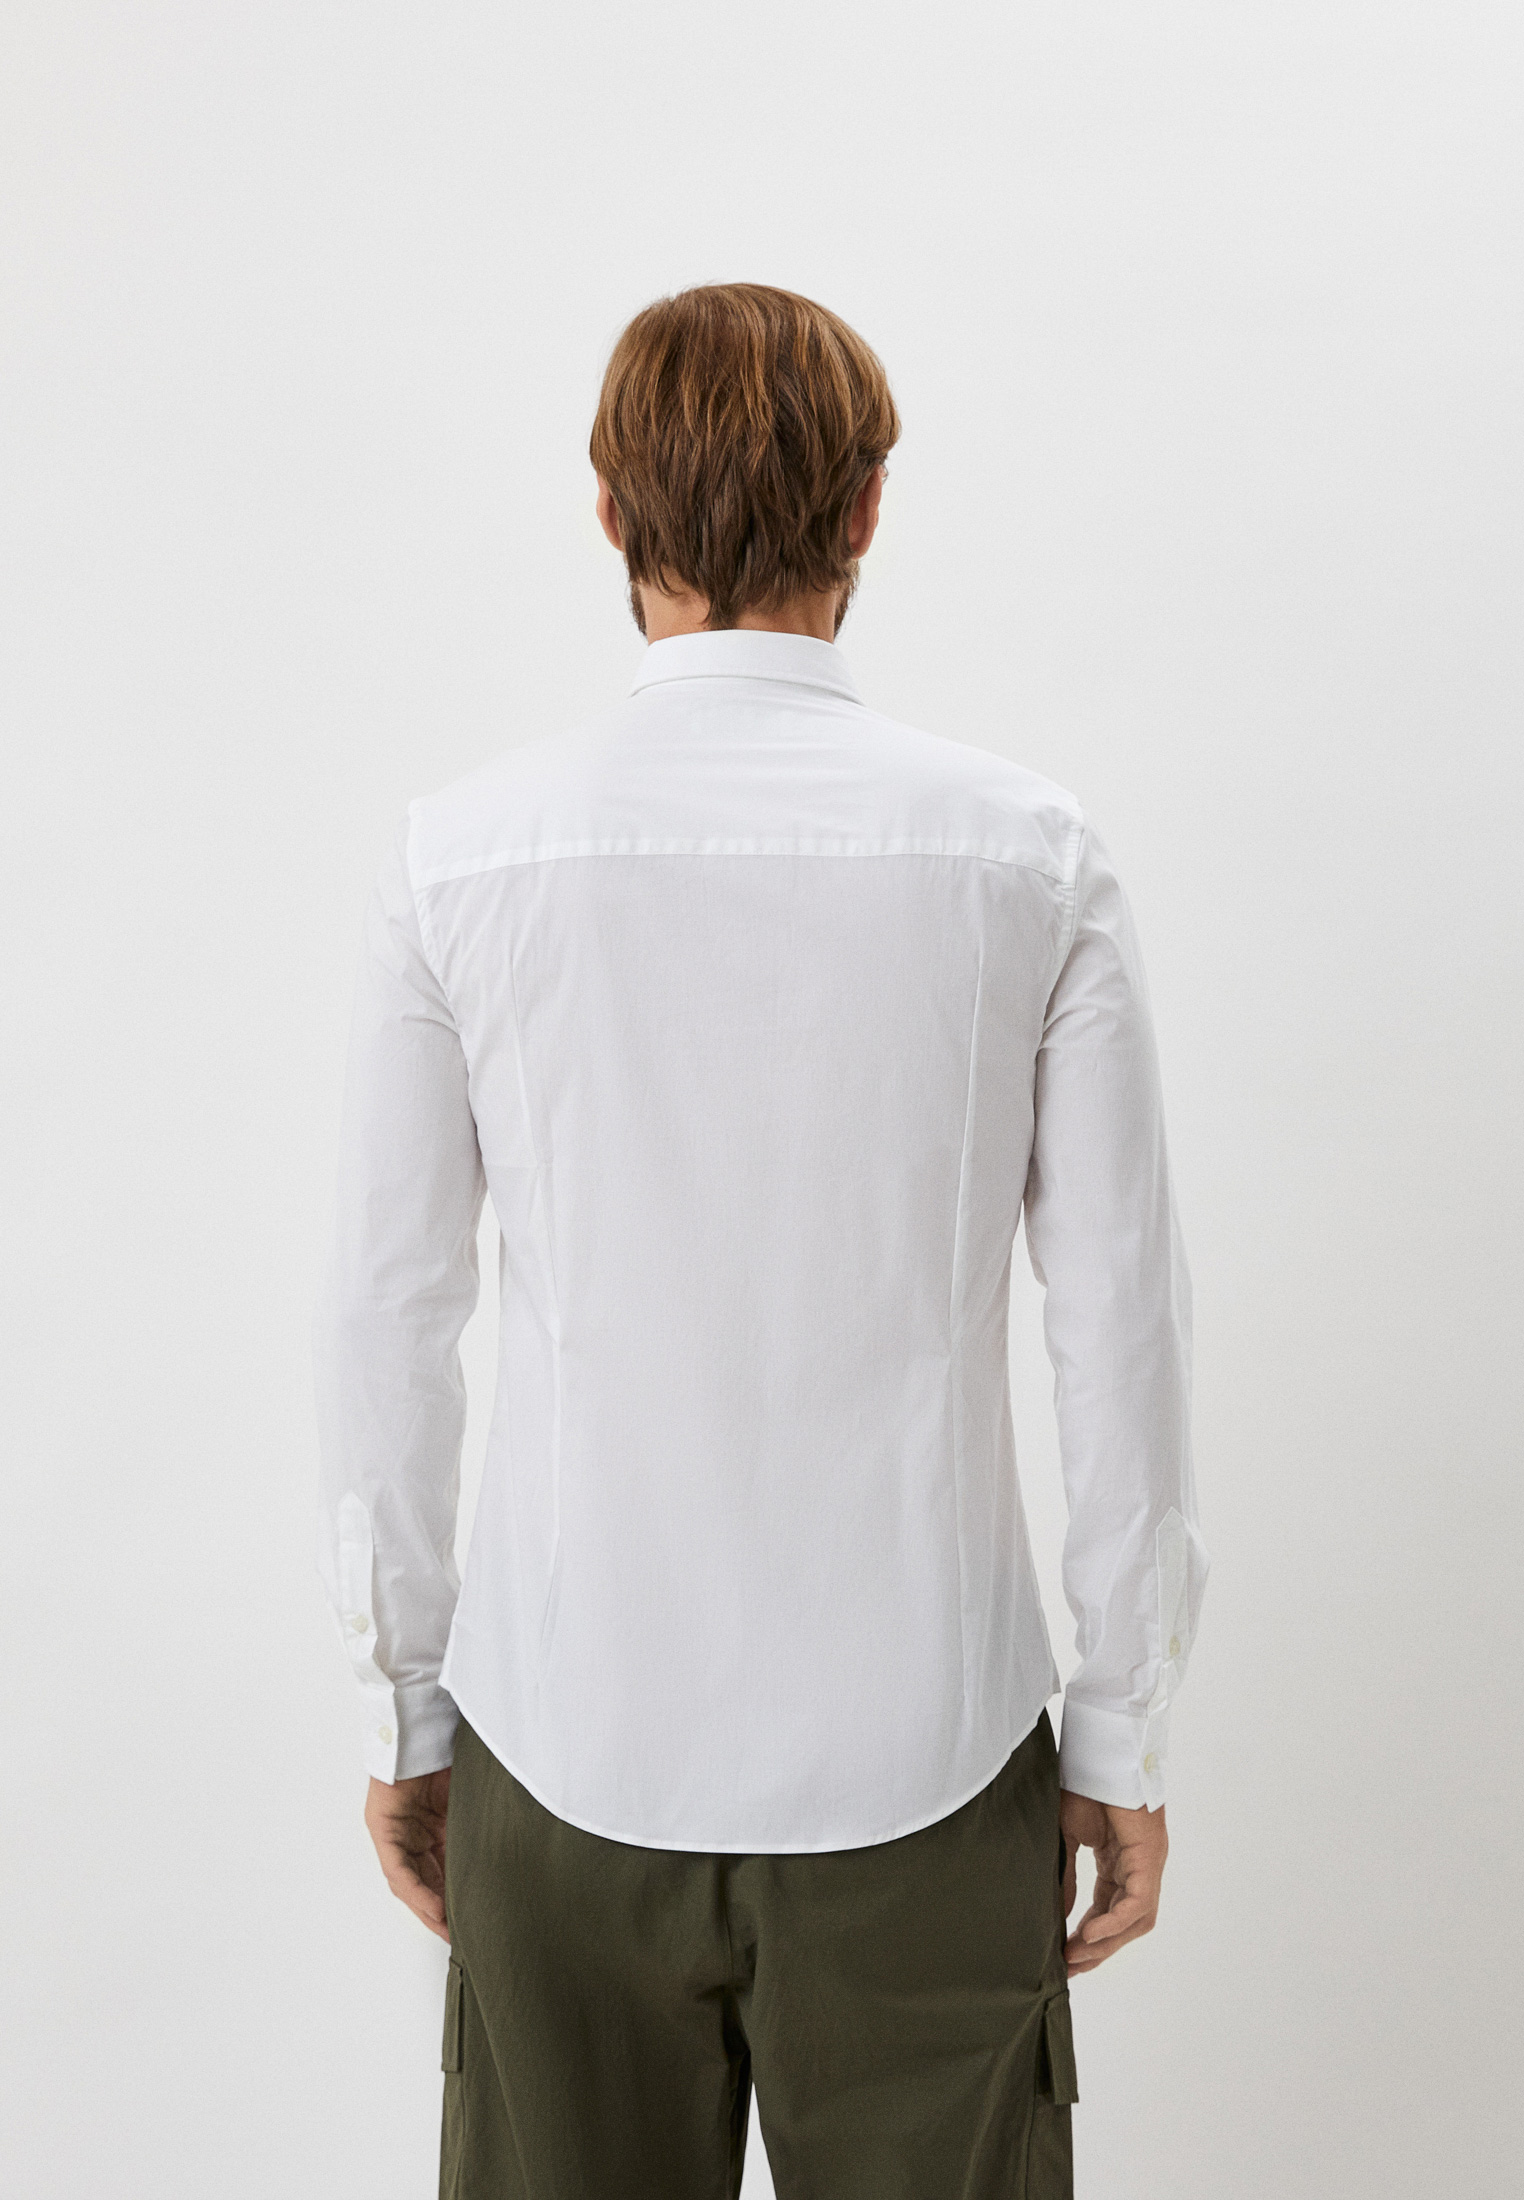 Рубашка с длинным рукавом Bikkembergs (Биккембергс) C C 055 80 S 2931: изображение 8